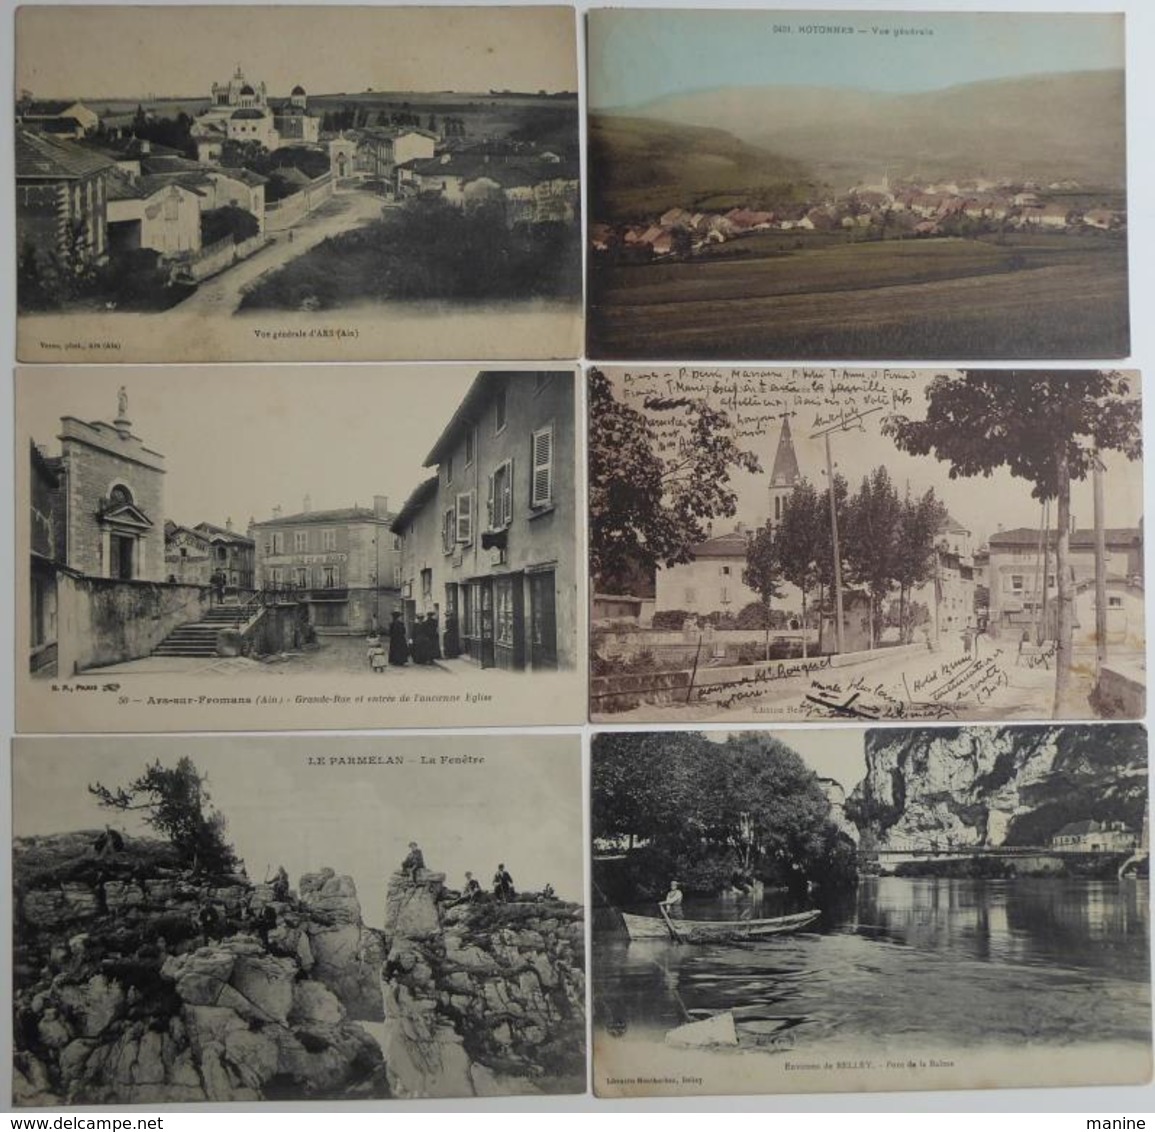 FRANCE; Lot de 350 Cartes postales anciennes à trier de l'ancienne région Rhône-Alpes